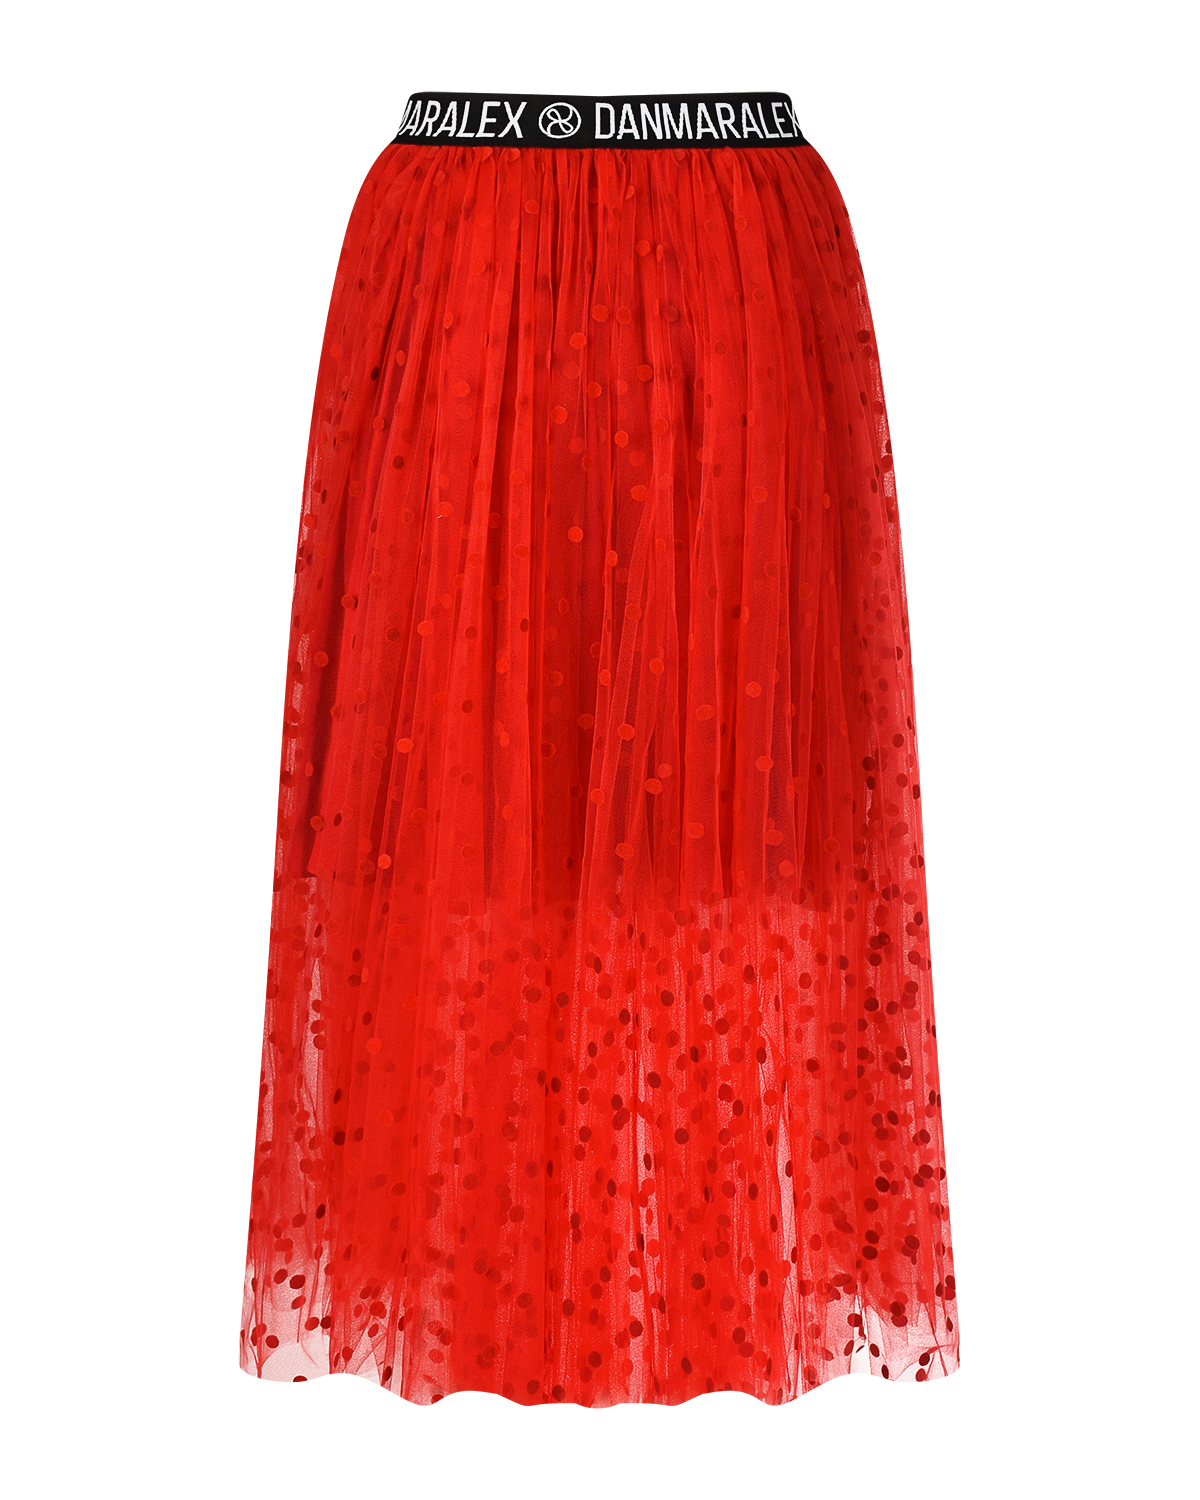 Красная юбка в горошек Dan Maralex, размер 42, цвет красный - фото 1